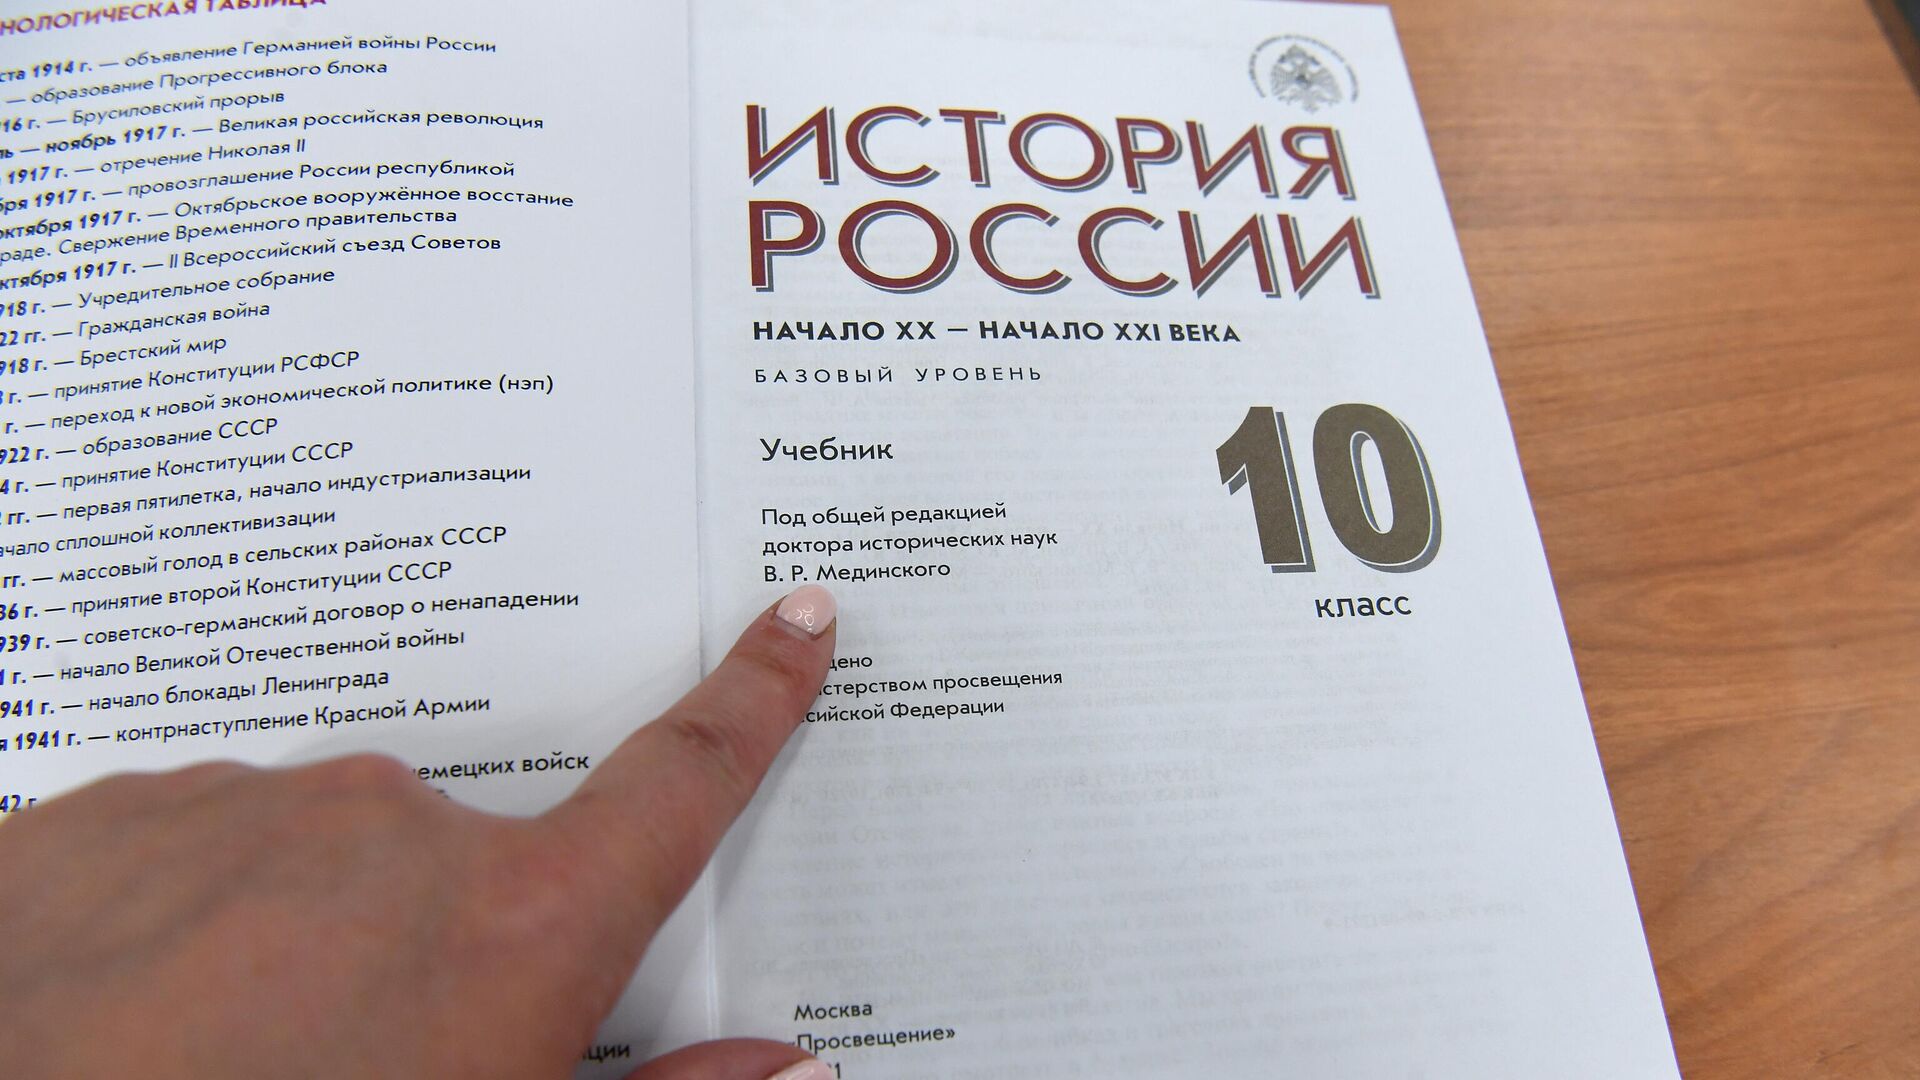 Костромскому губернатору Сергею Ситникову пришелся по душе новый школьный учебник истории